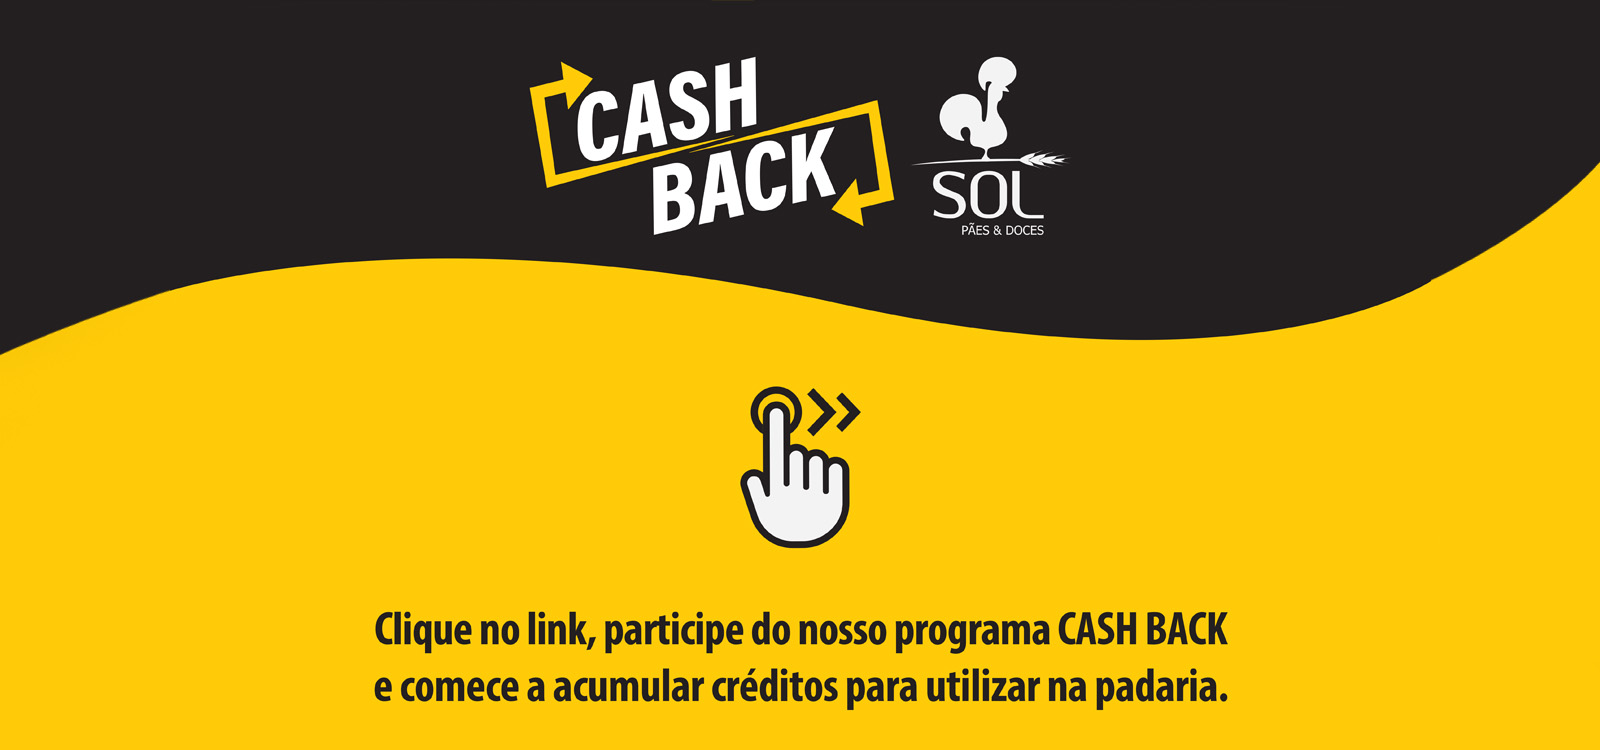 Cashback - Padaria Sol